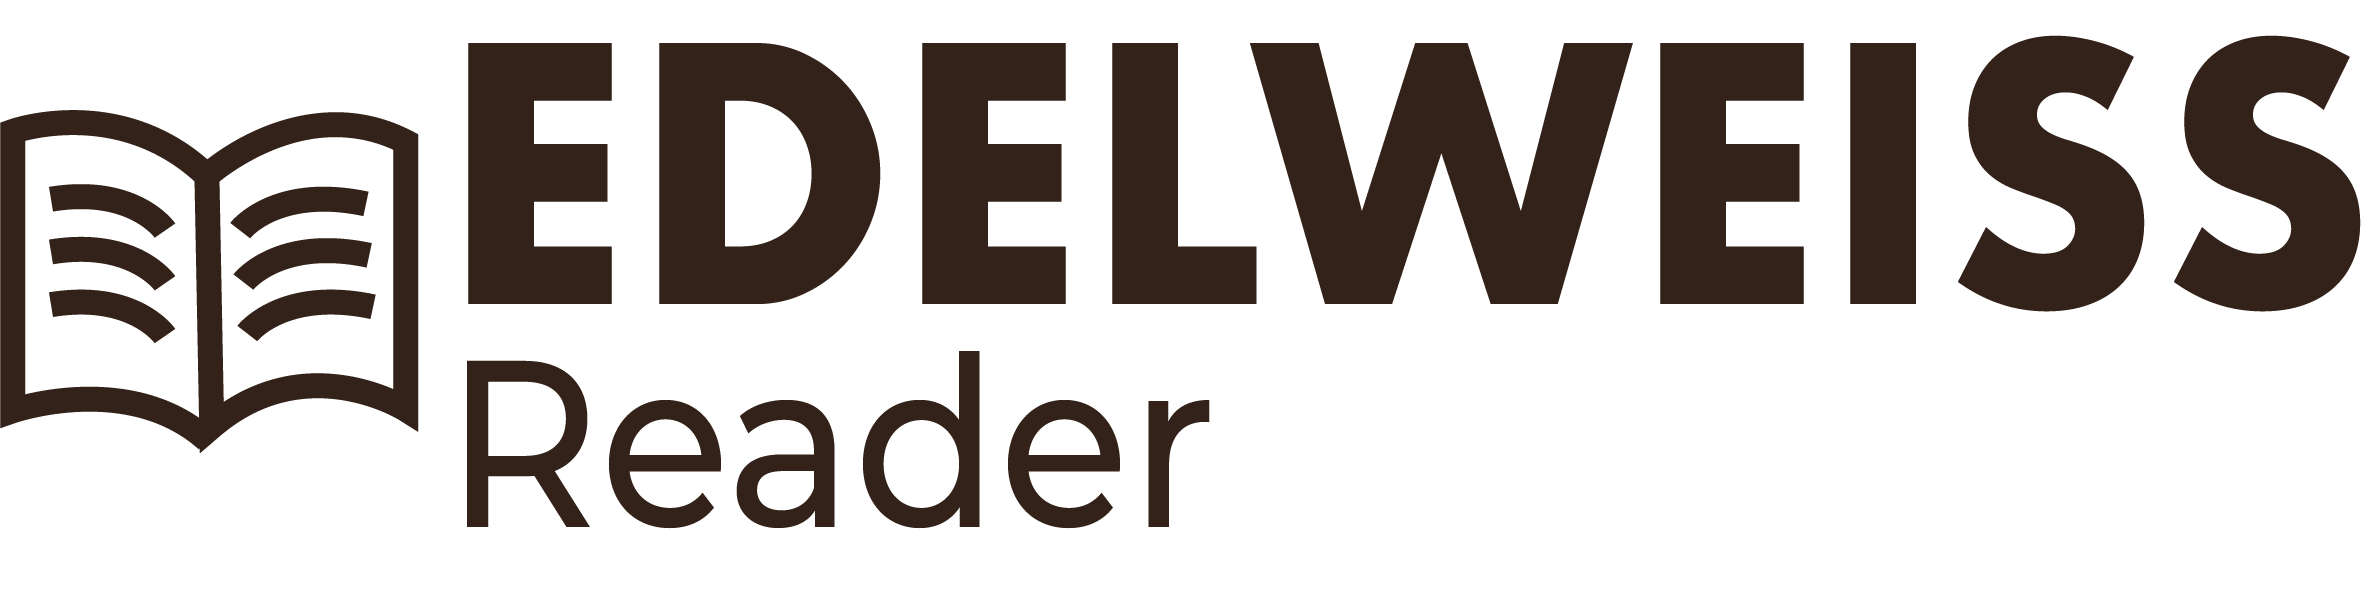 Edelweiss Reader v1_Color